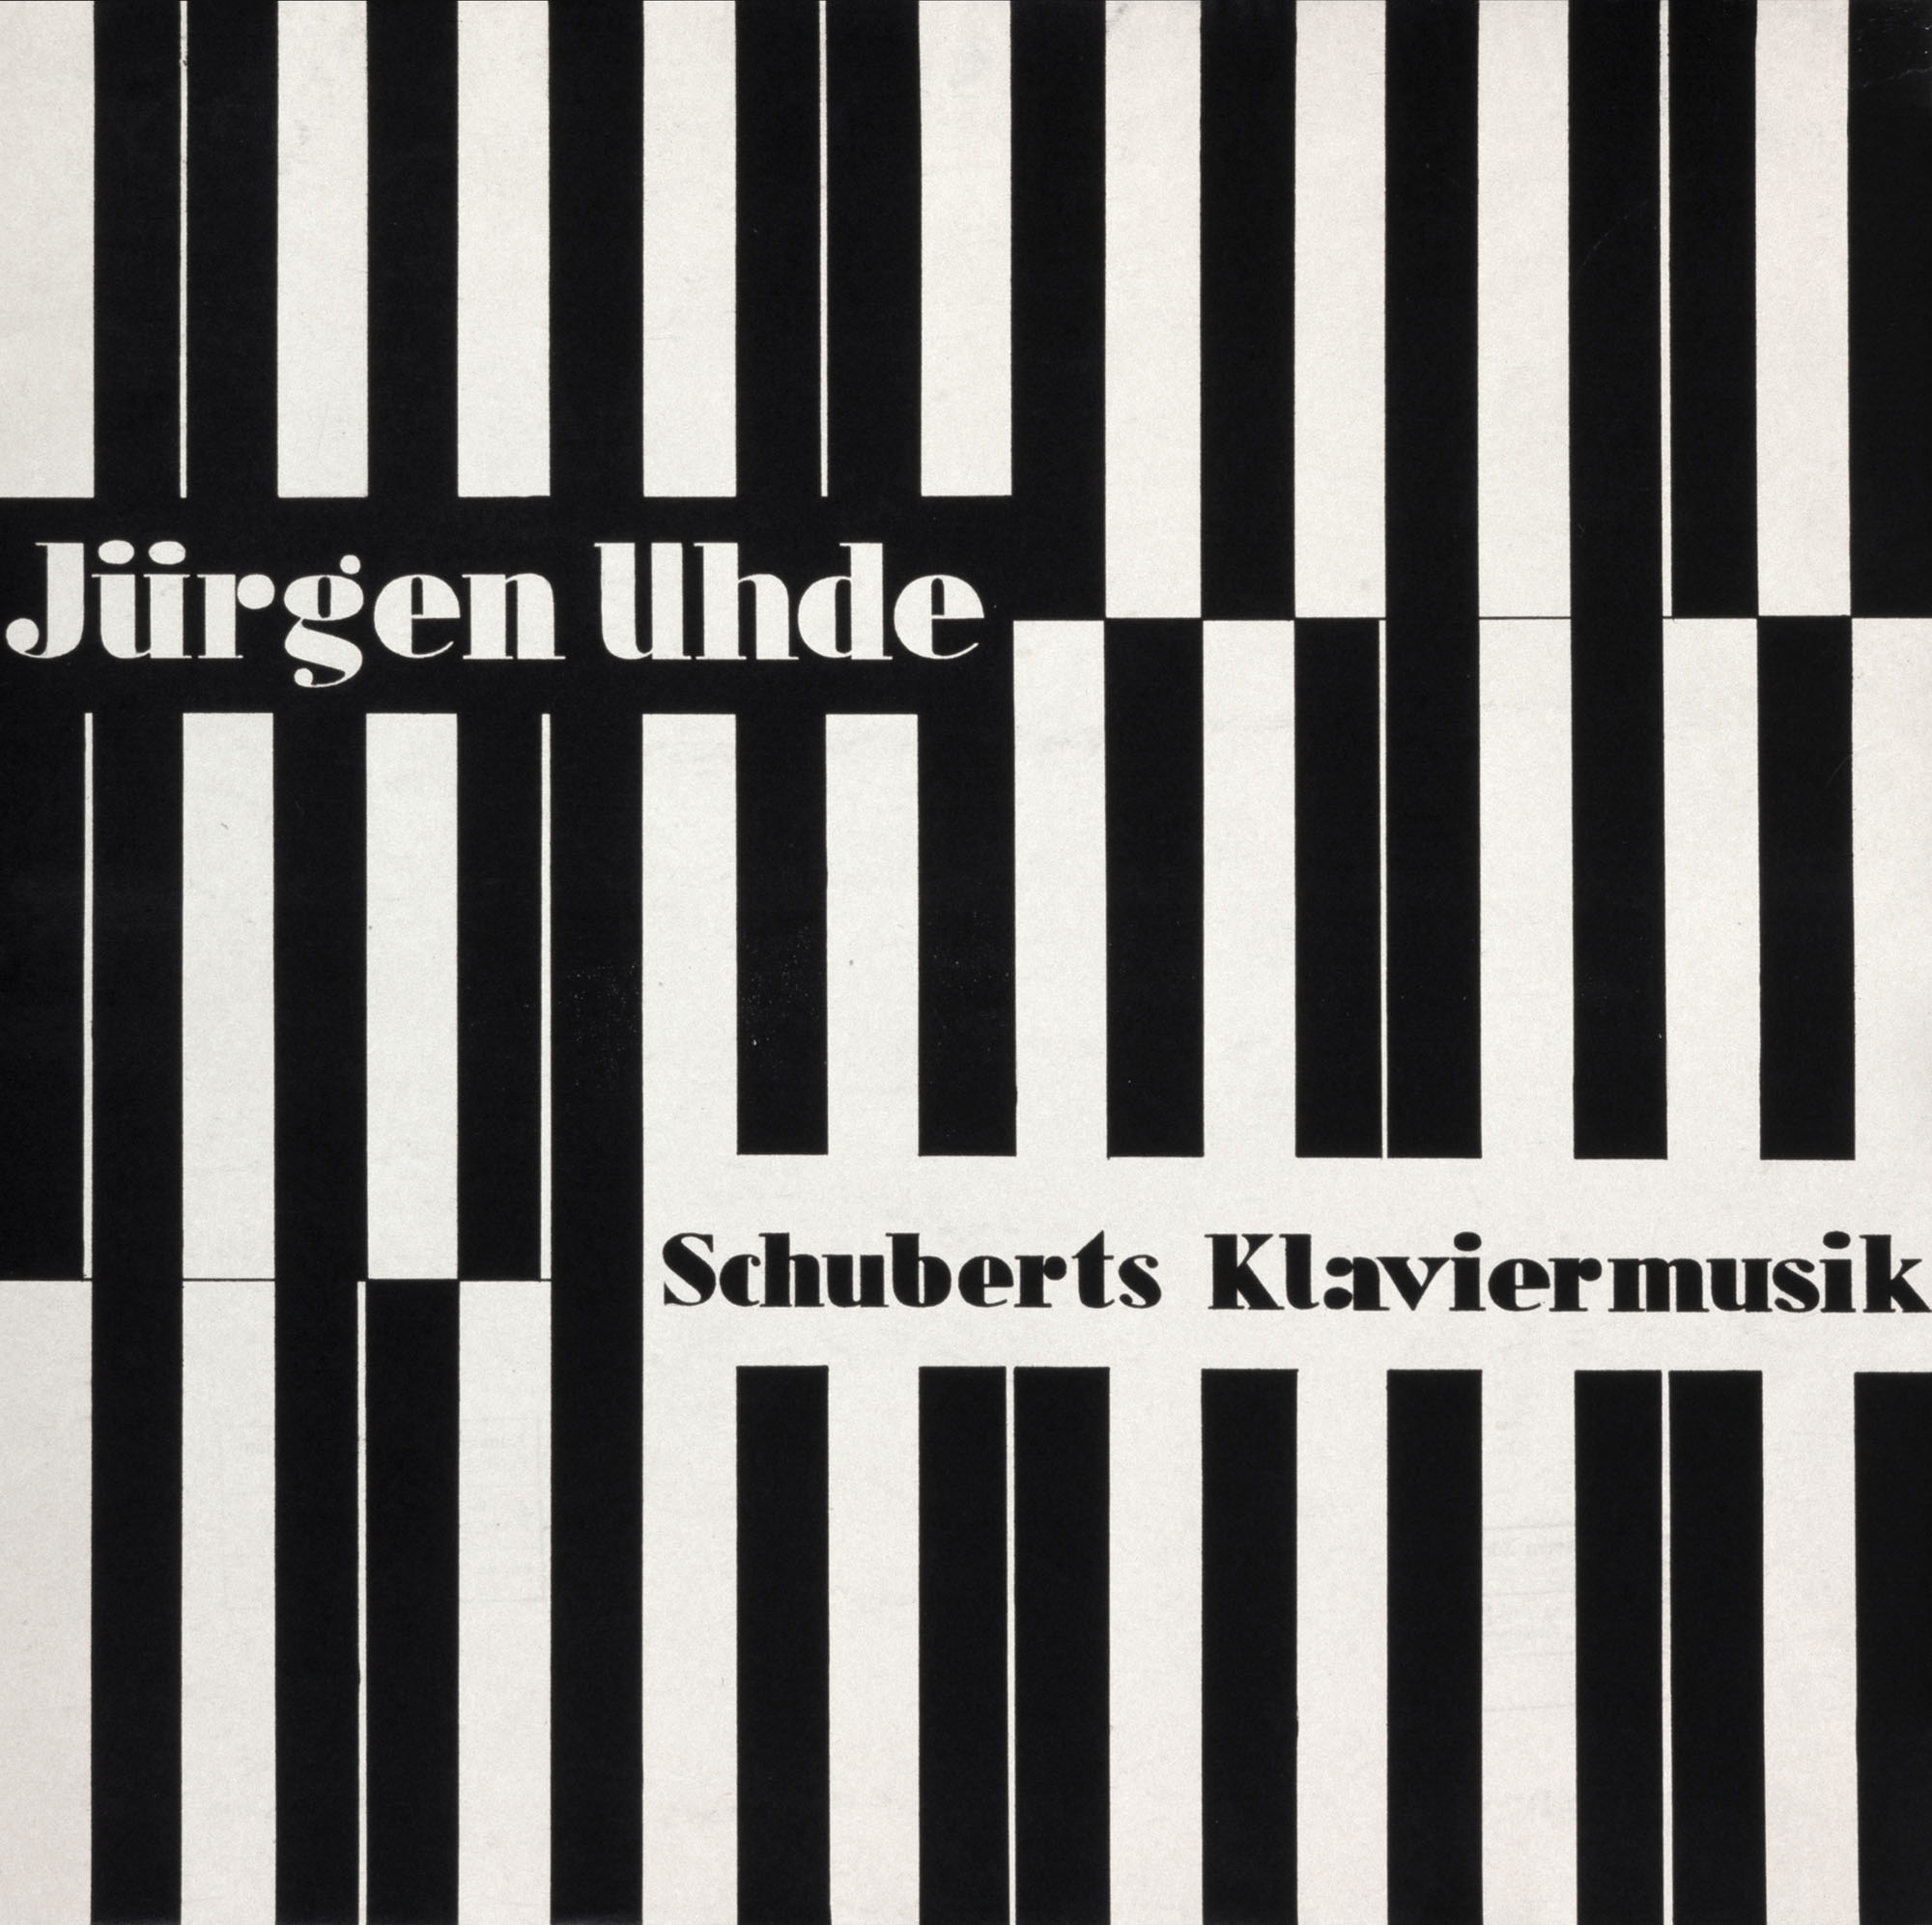 Jürgen Uhde – Konzertante Klaviermusik Otl Aicher Poster